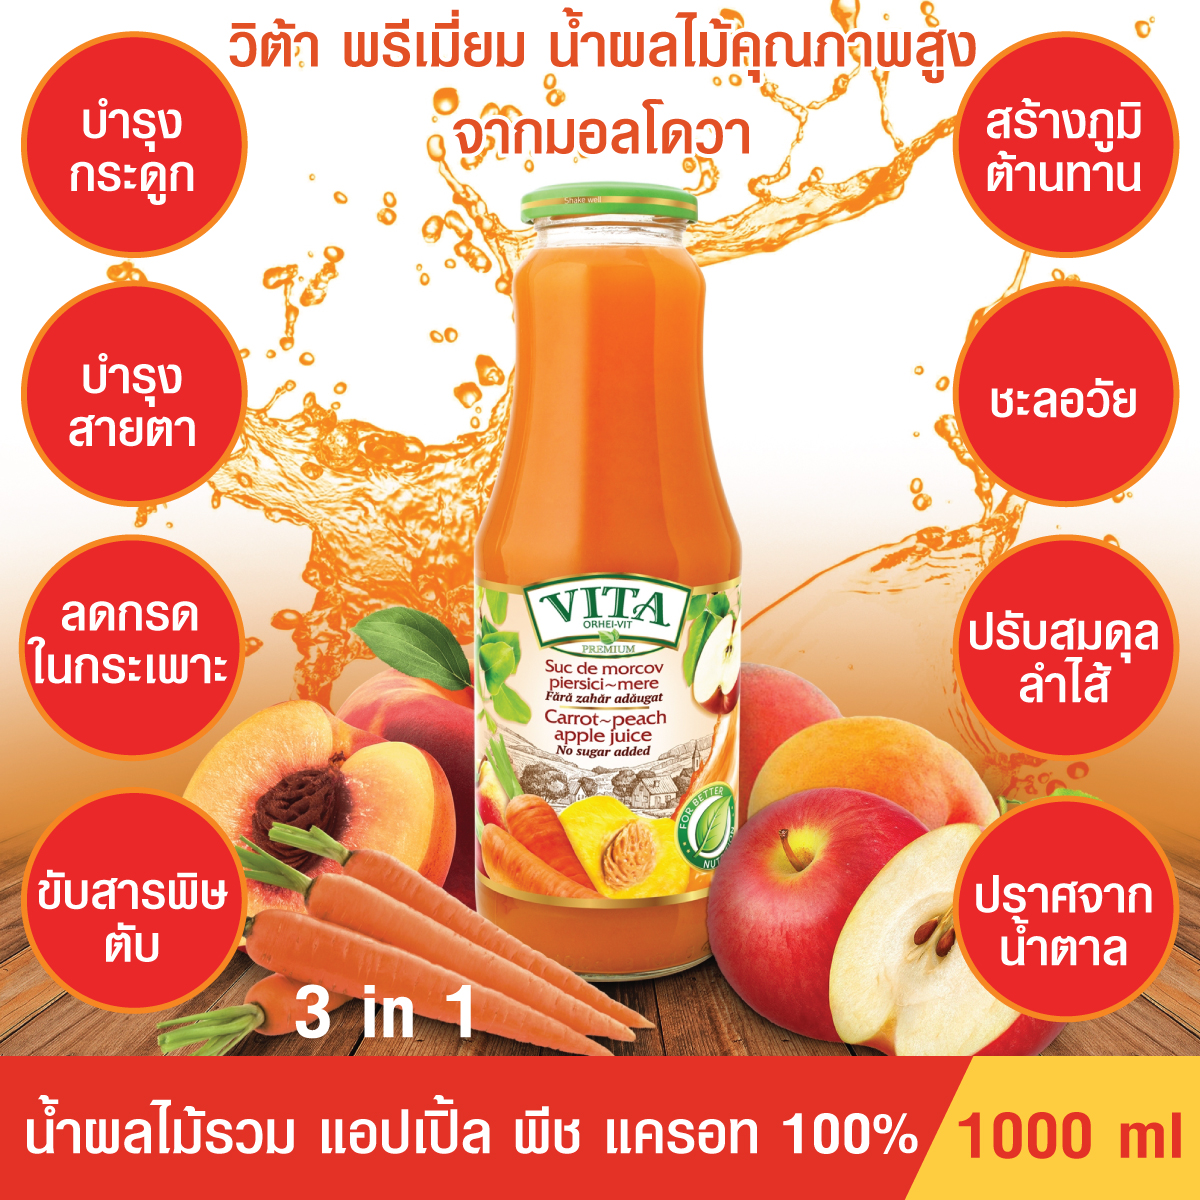 (ของแท้ นำเข้า)VITA ORHEI-VIT Carrot peach apple Juice No sugar added 1000 mL น้ำผลไม้รวม แครอท พีช แอปเปิ้ล แท้100% ไม่มีน้ำตาล สร้างภูมิต้านทาน ล้างสารพิษ ชะลอวัย